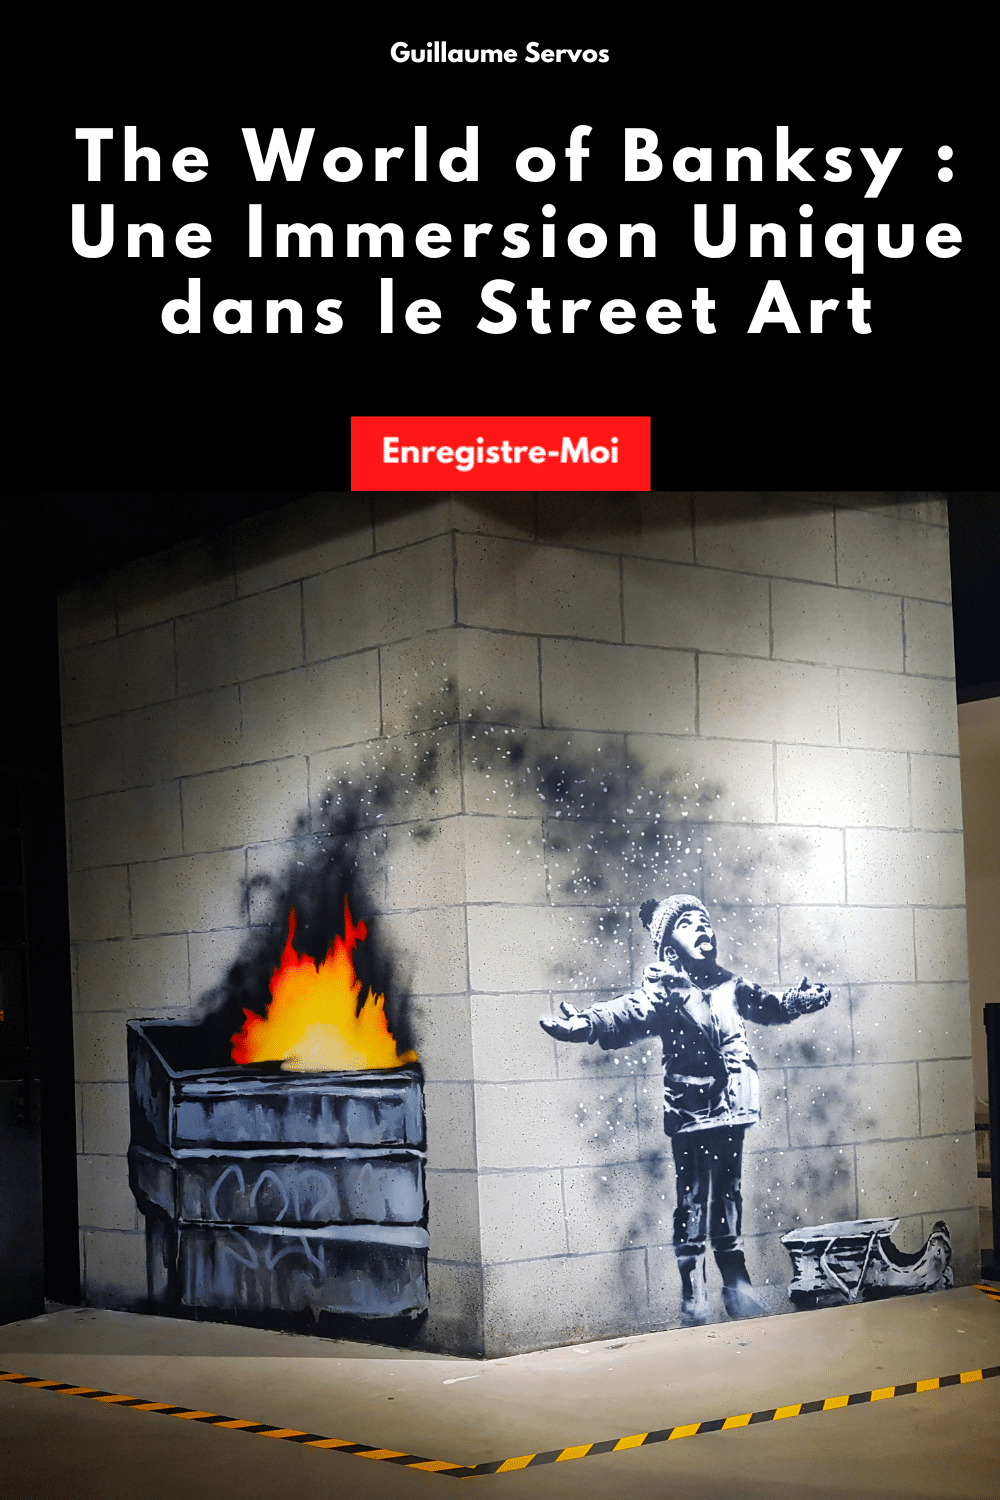 The World of Banksy : Une Immersion Unique dans le Street Art